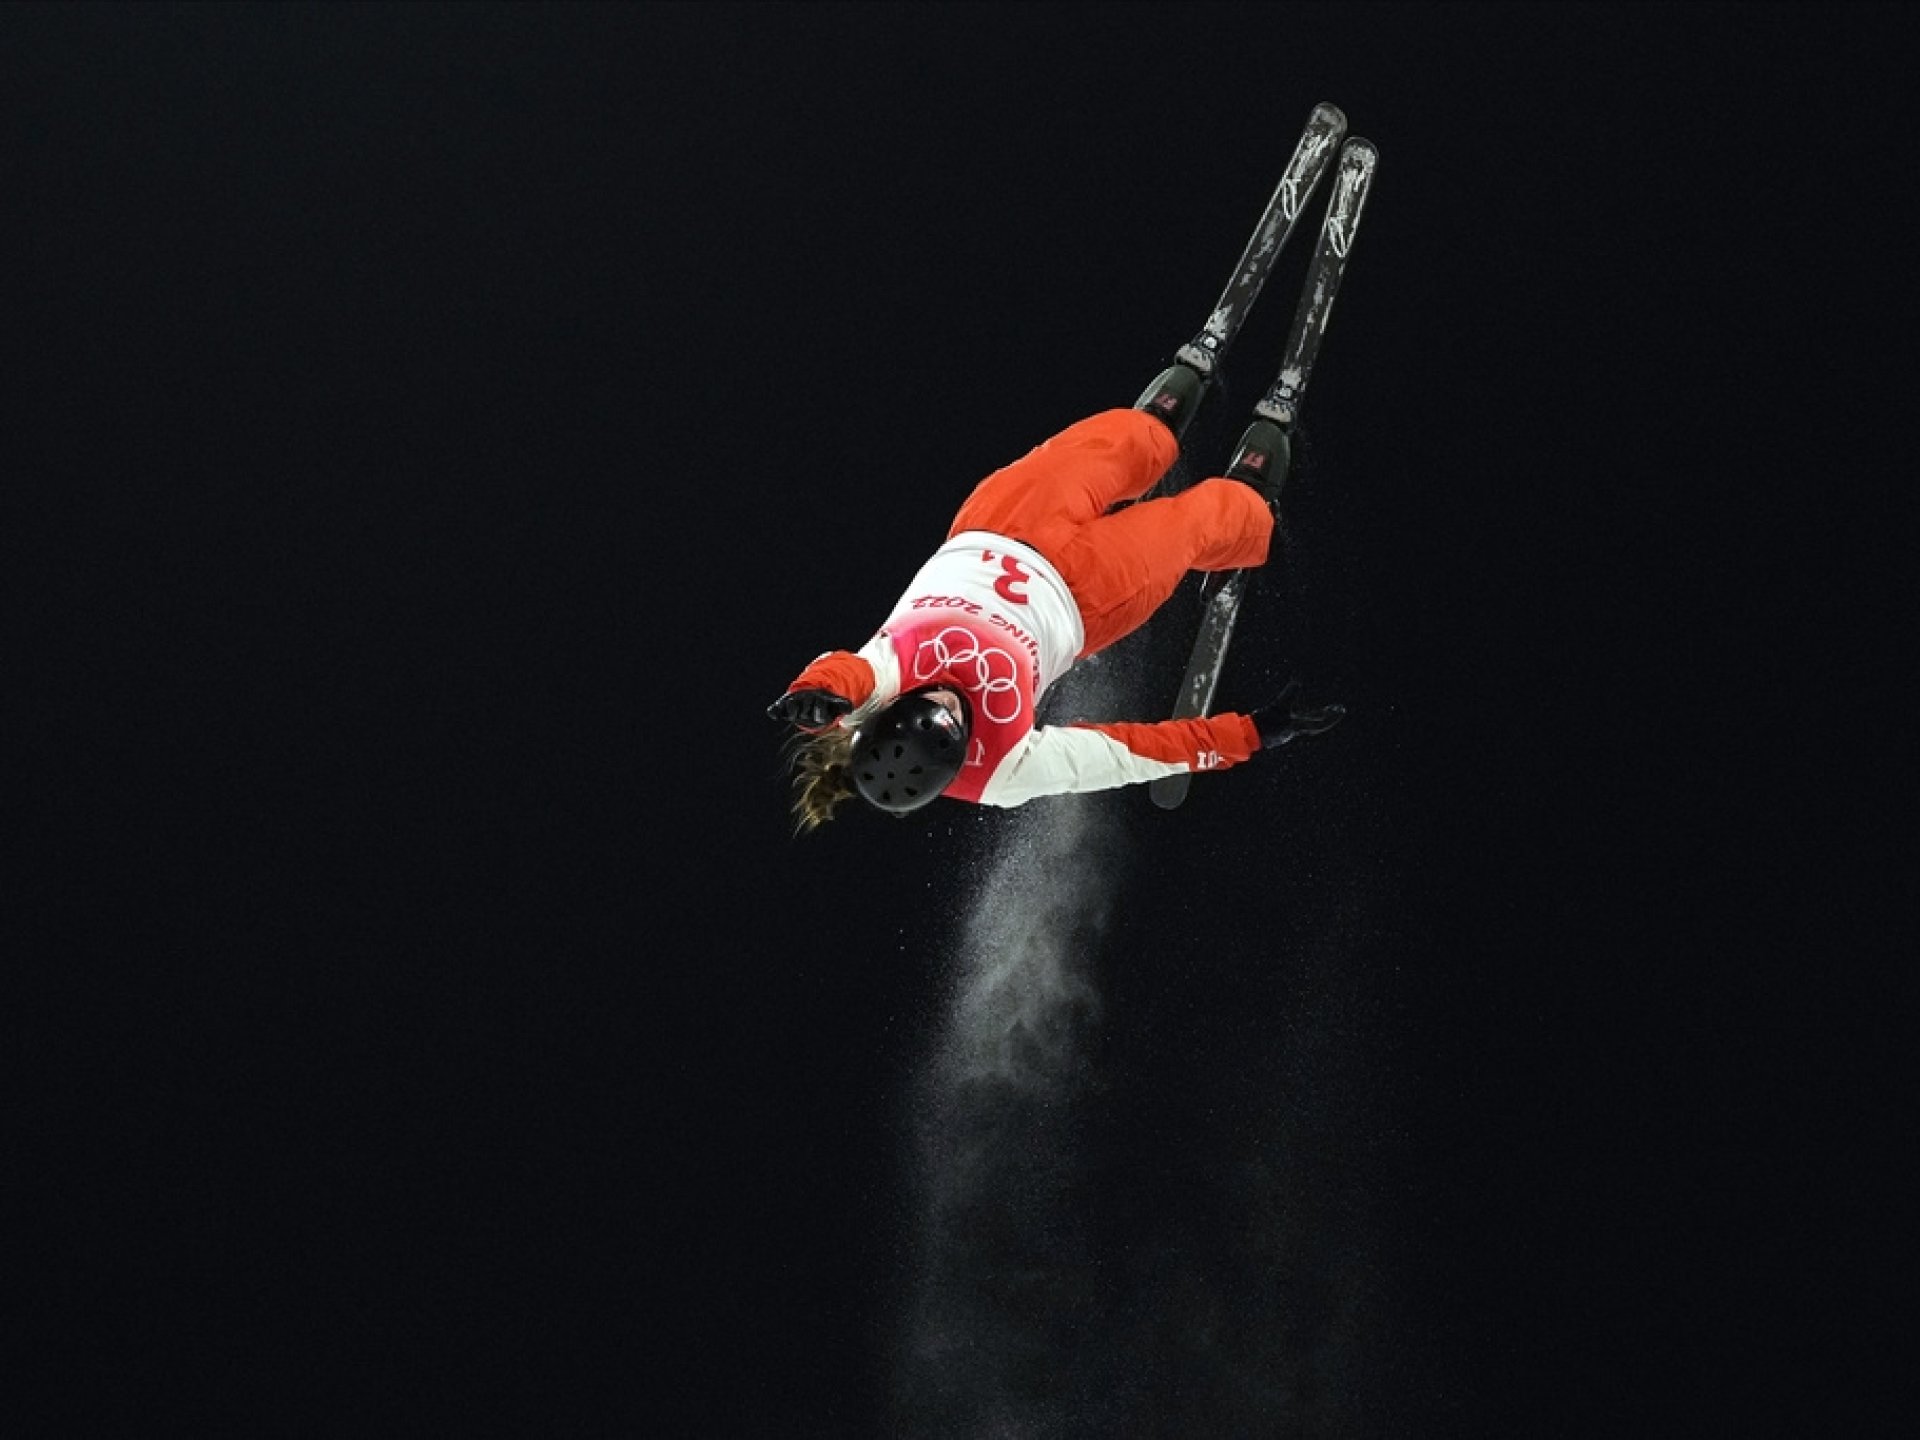 La Suissesse Alexandra Baer en action durant les finales des Aerials mixte de ski freestyle.